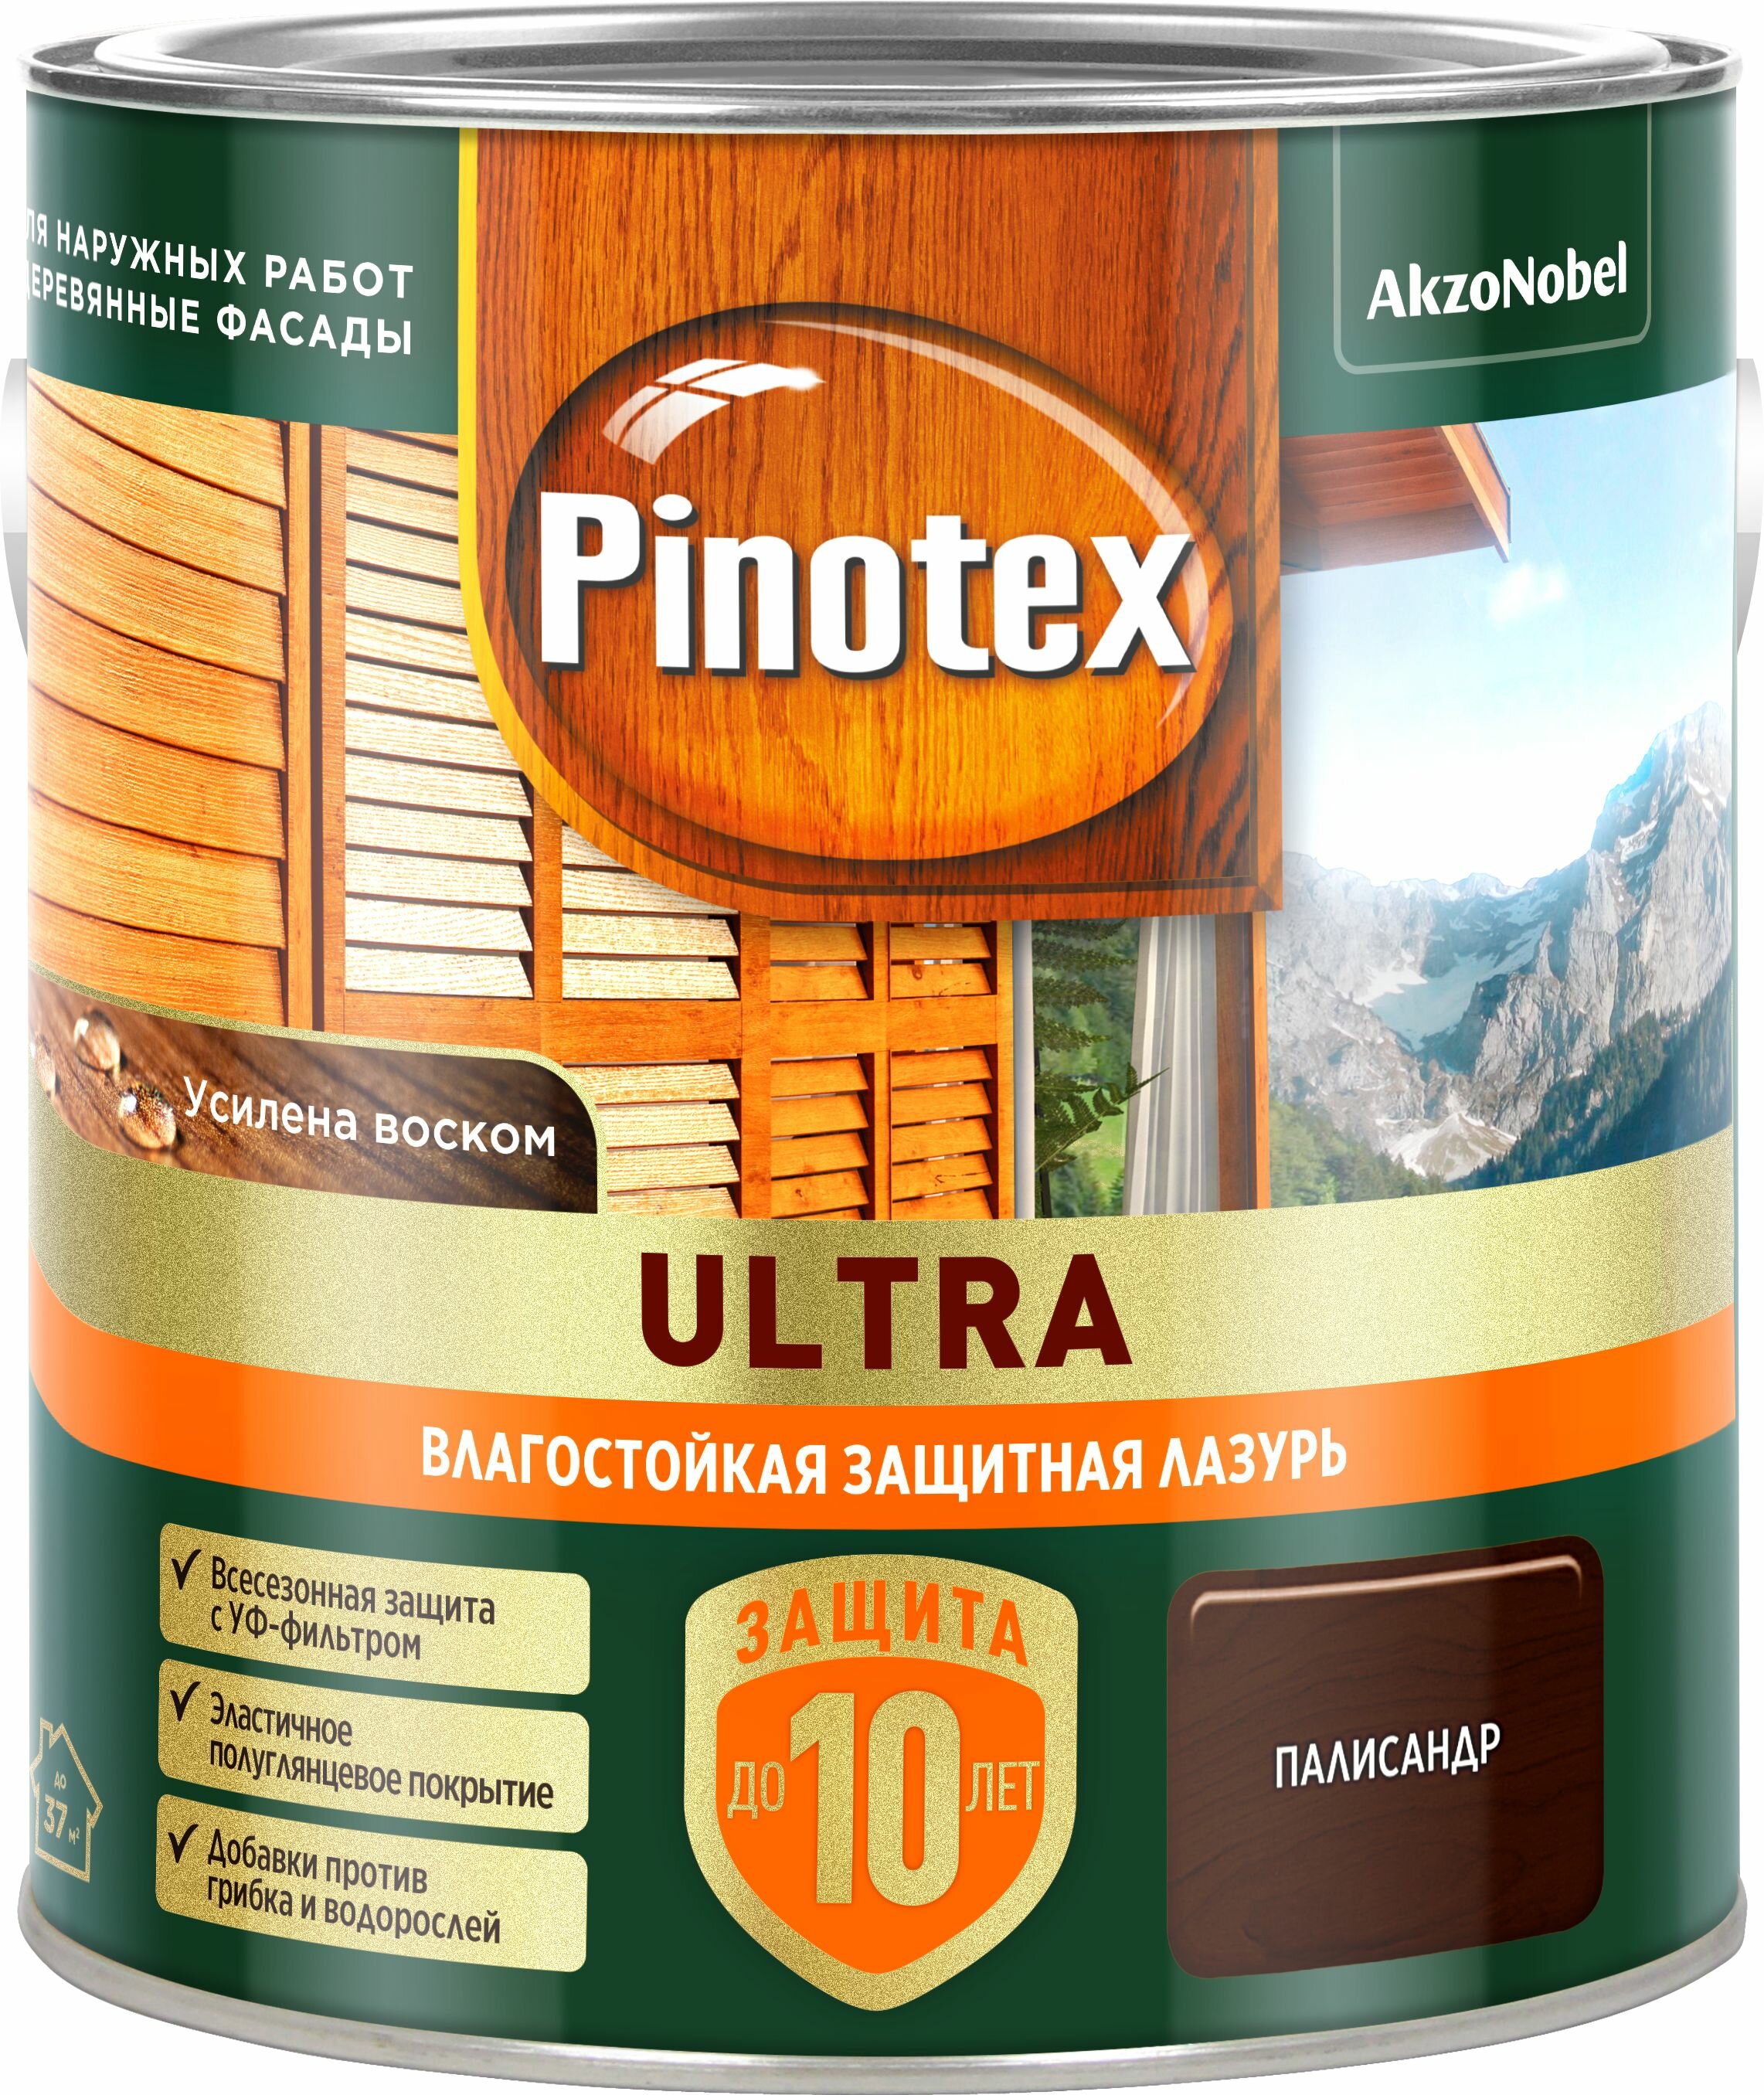   Pinotex Ultra  2,5  ()